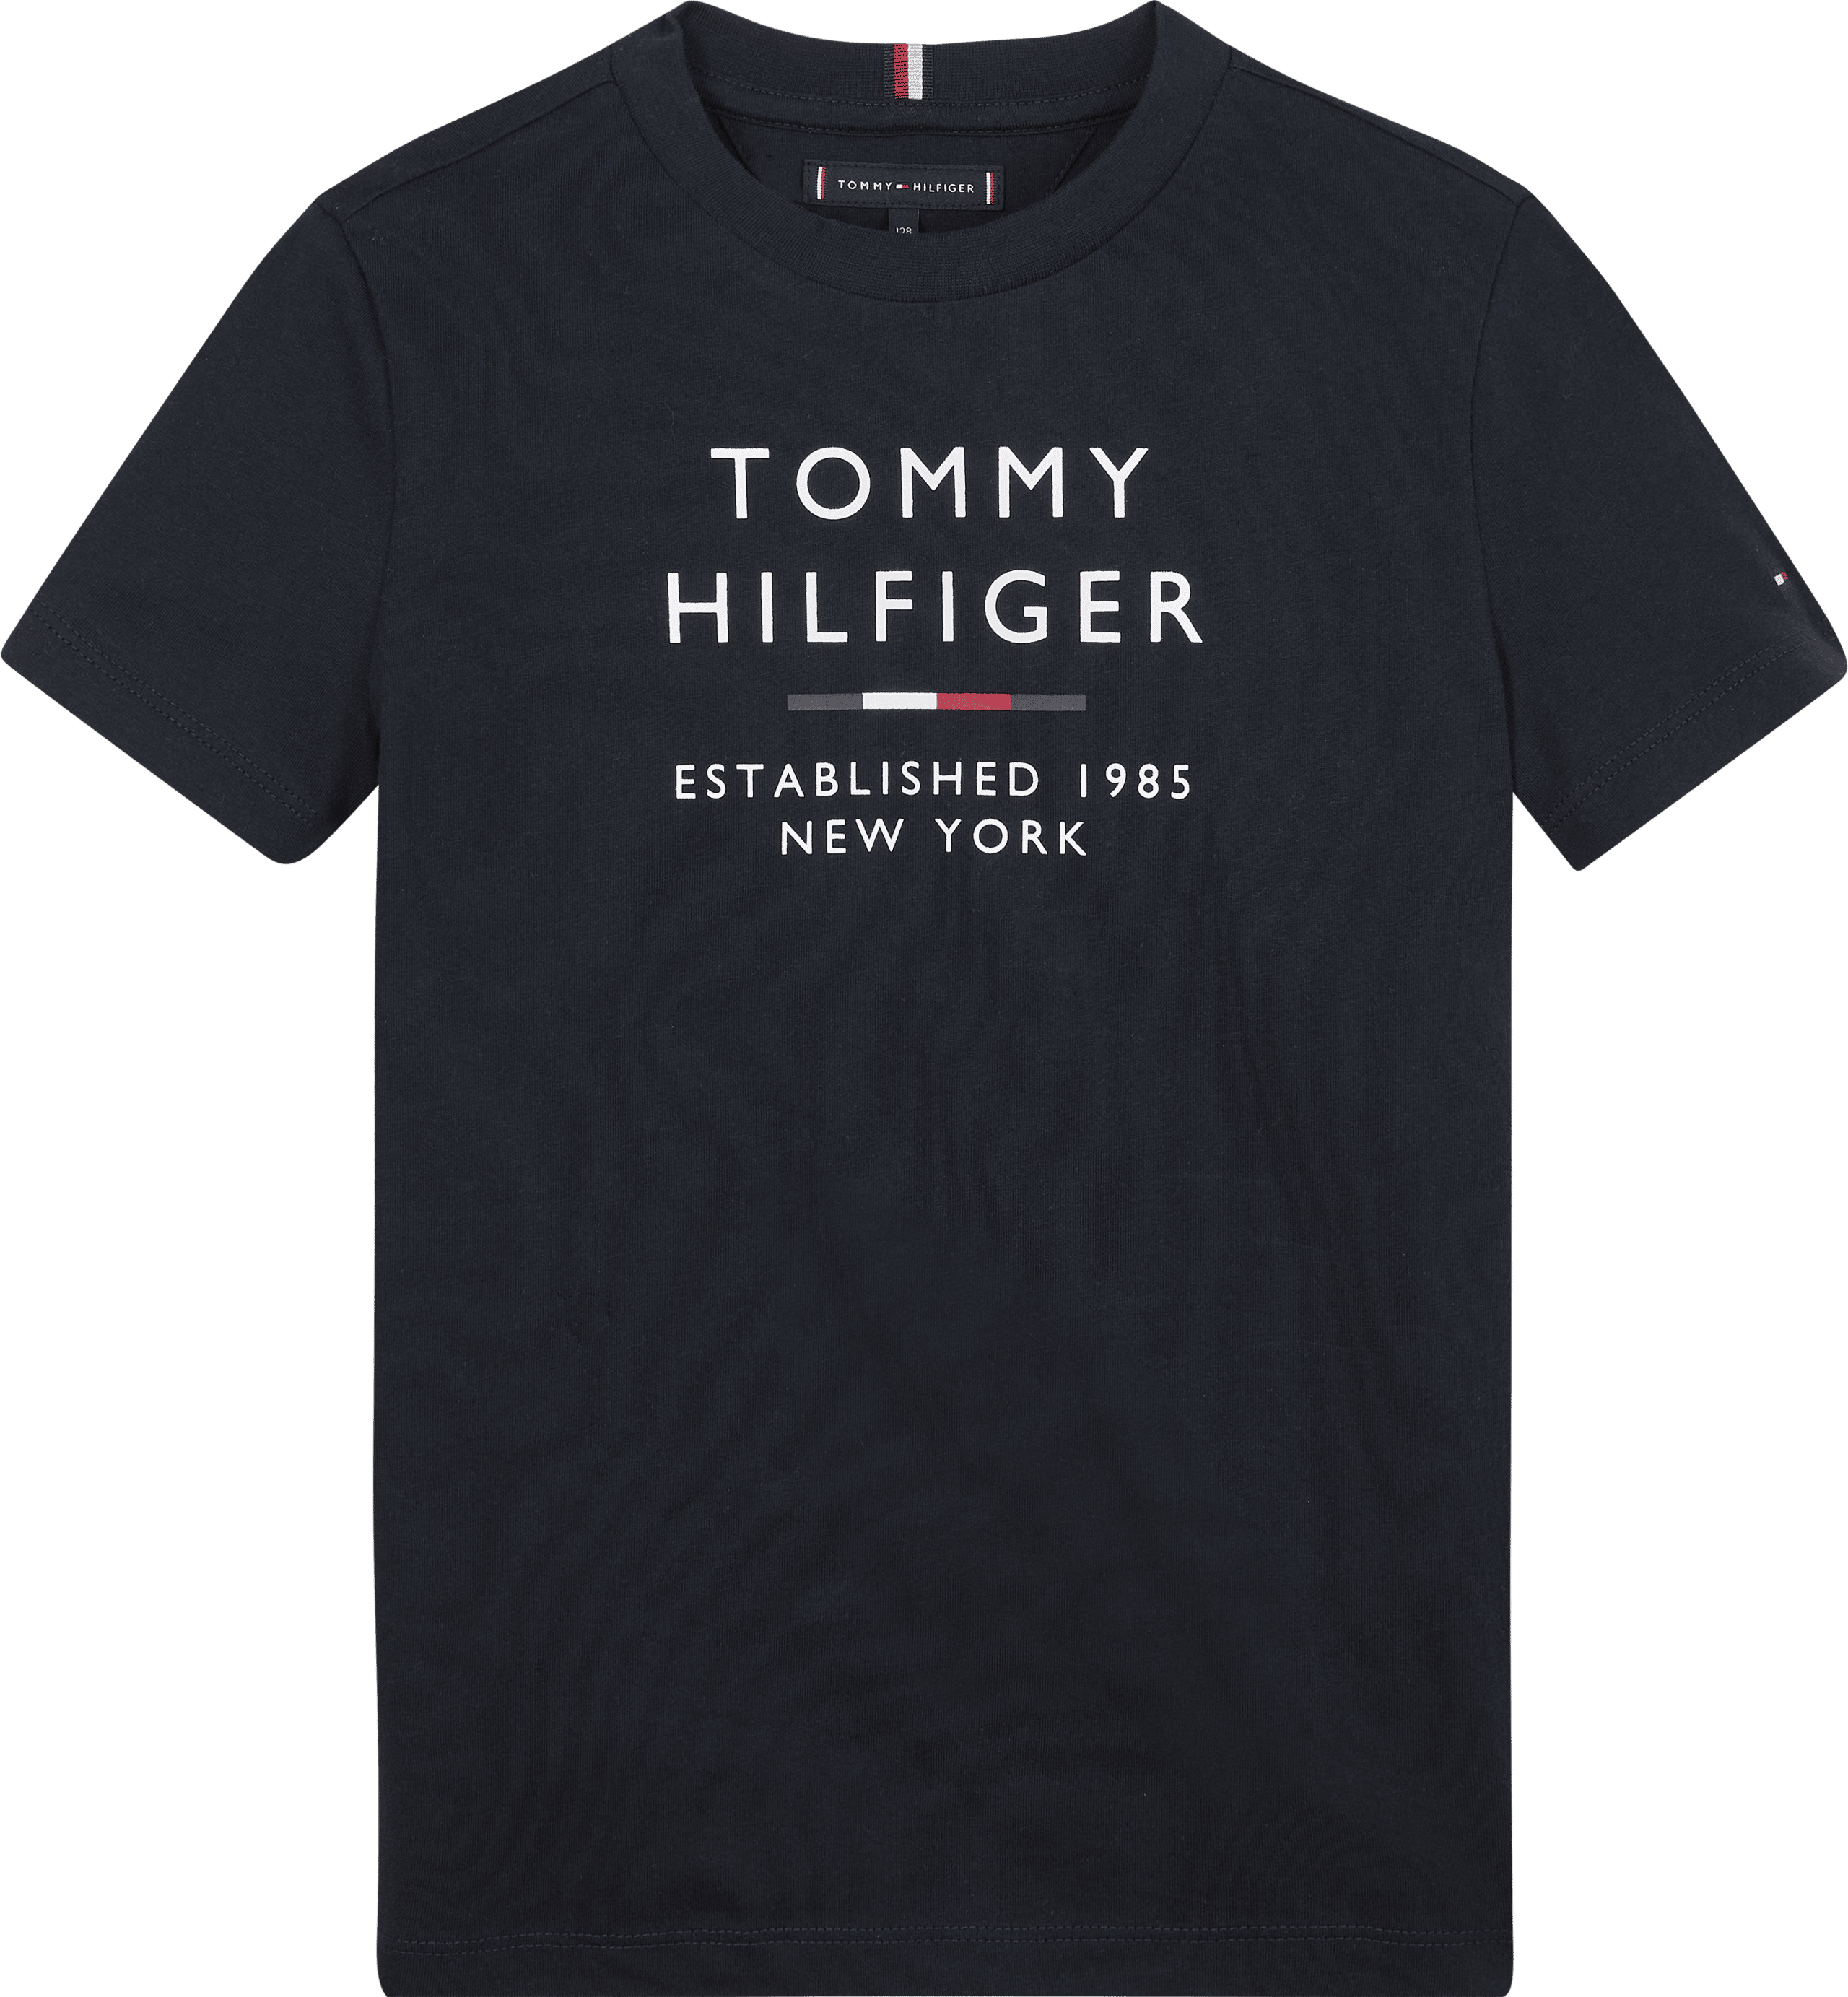 TOMMY HILFIGER - TH LOGO TEE S/S/ - KB0KB08027DW5